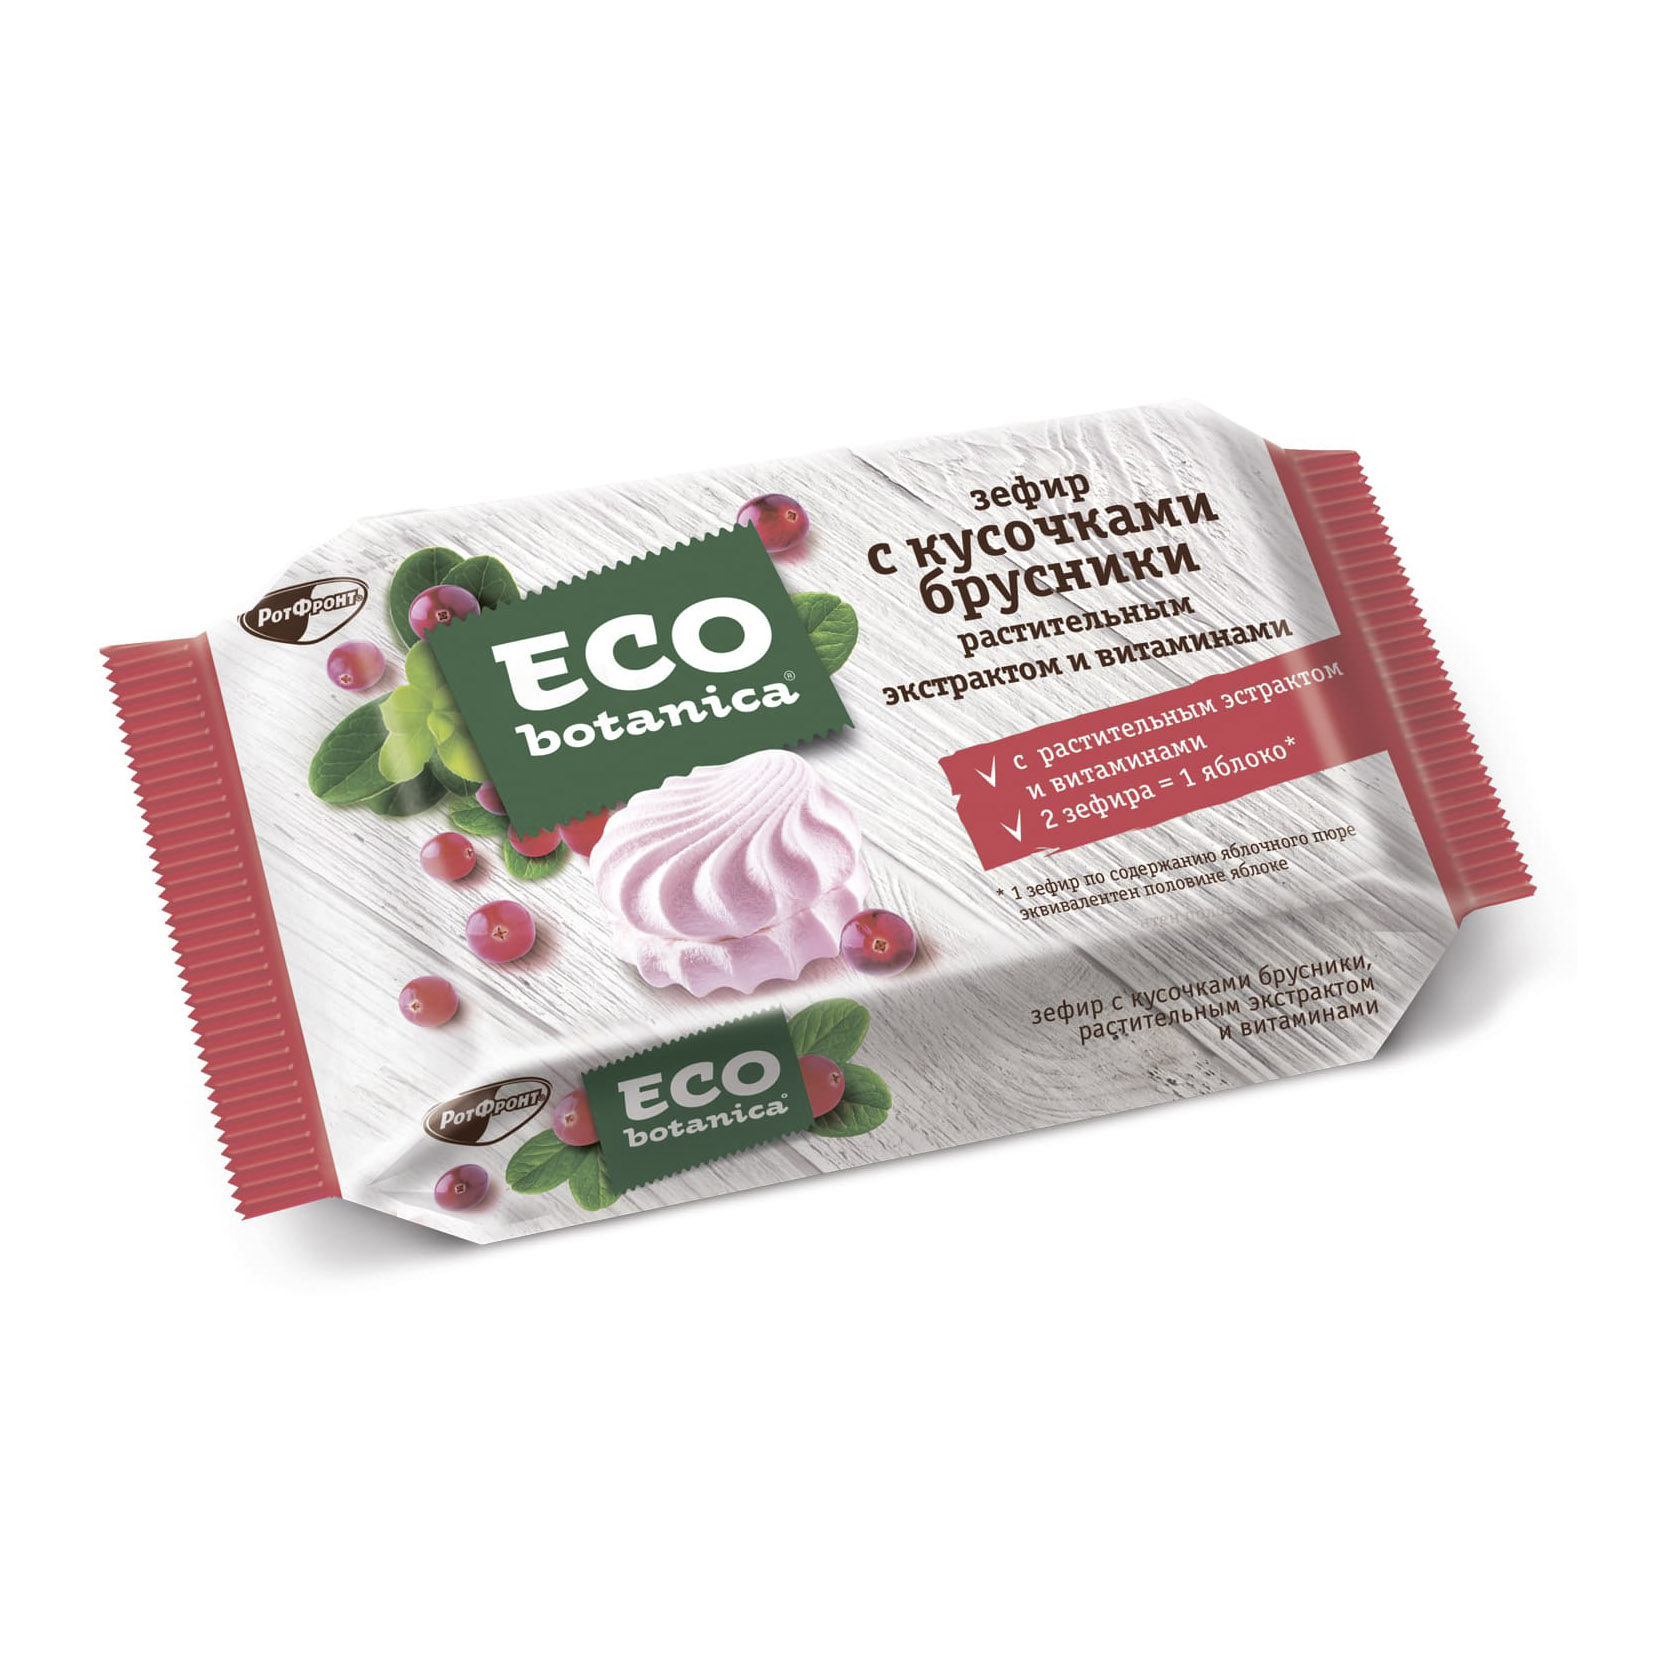 Зефир Eco Botanica с кусочками брусники, растительным экстрактом и витаминами 250 г витаминный комплекс